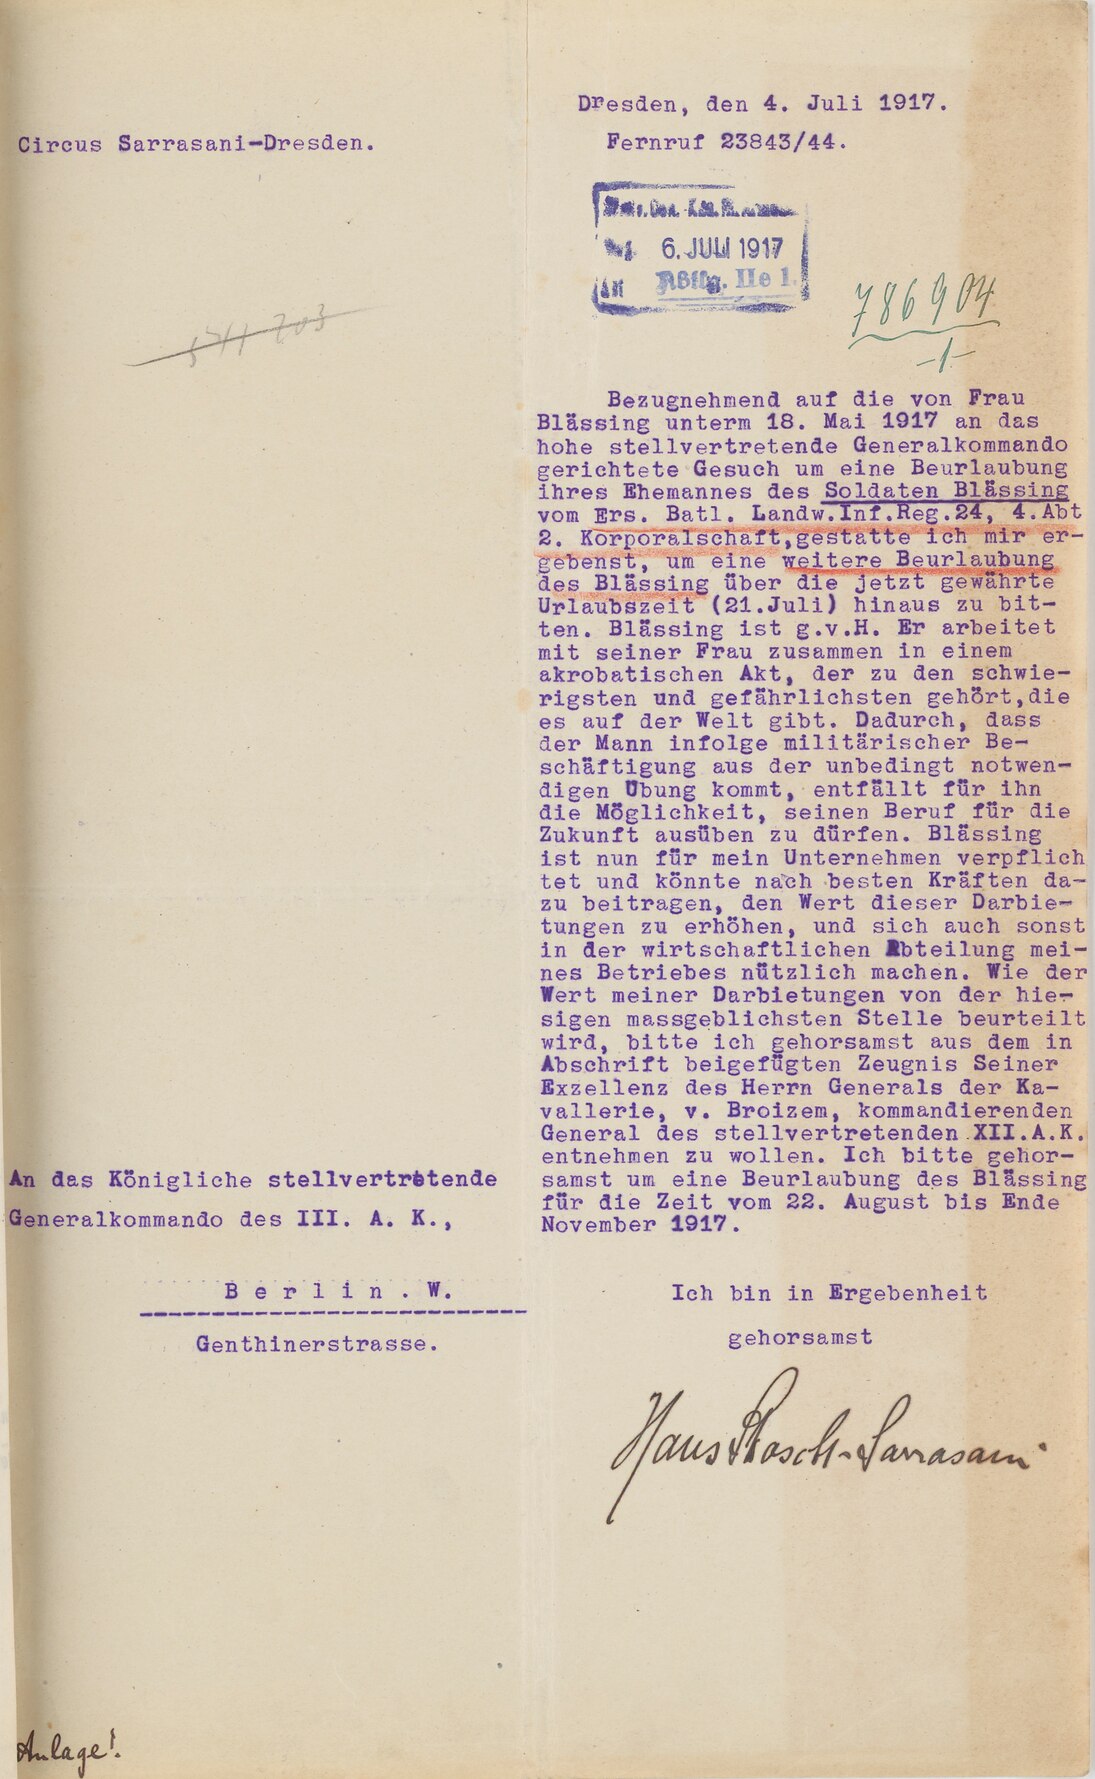 Dokument zum Gesuch von Hans Stosch-Sarrasani um weitere Beurlaubung seines Akrobaten, 4. Juli 1917